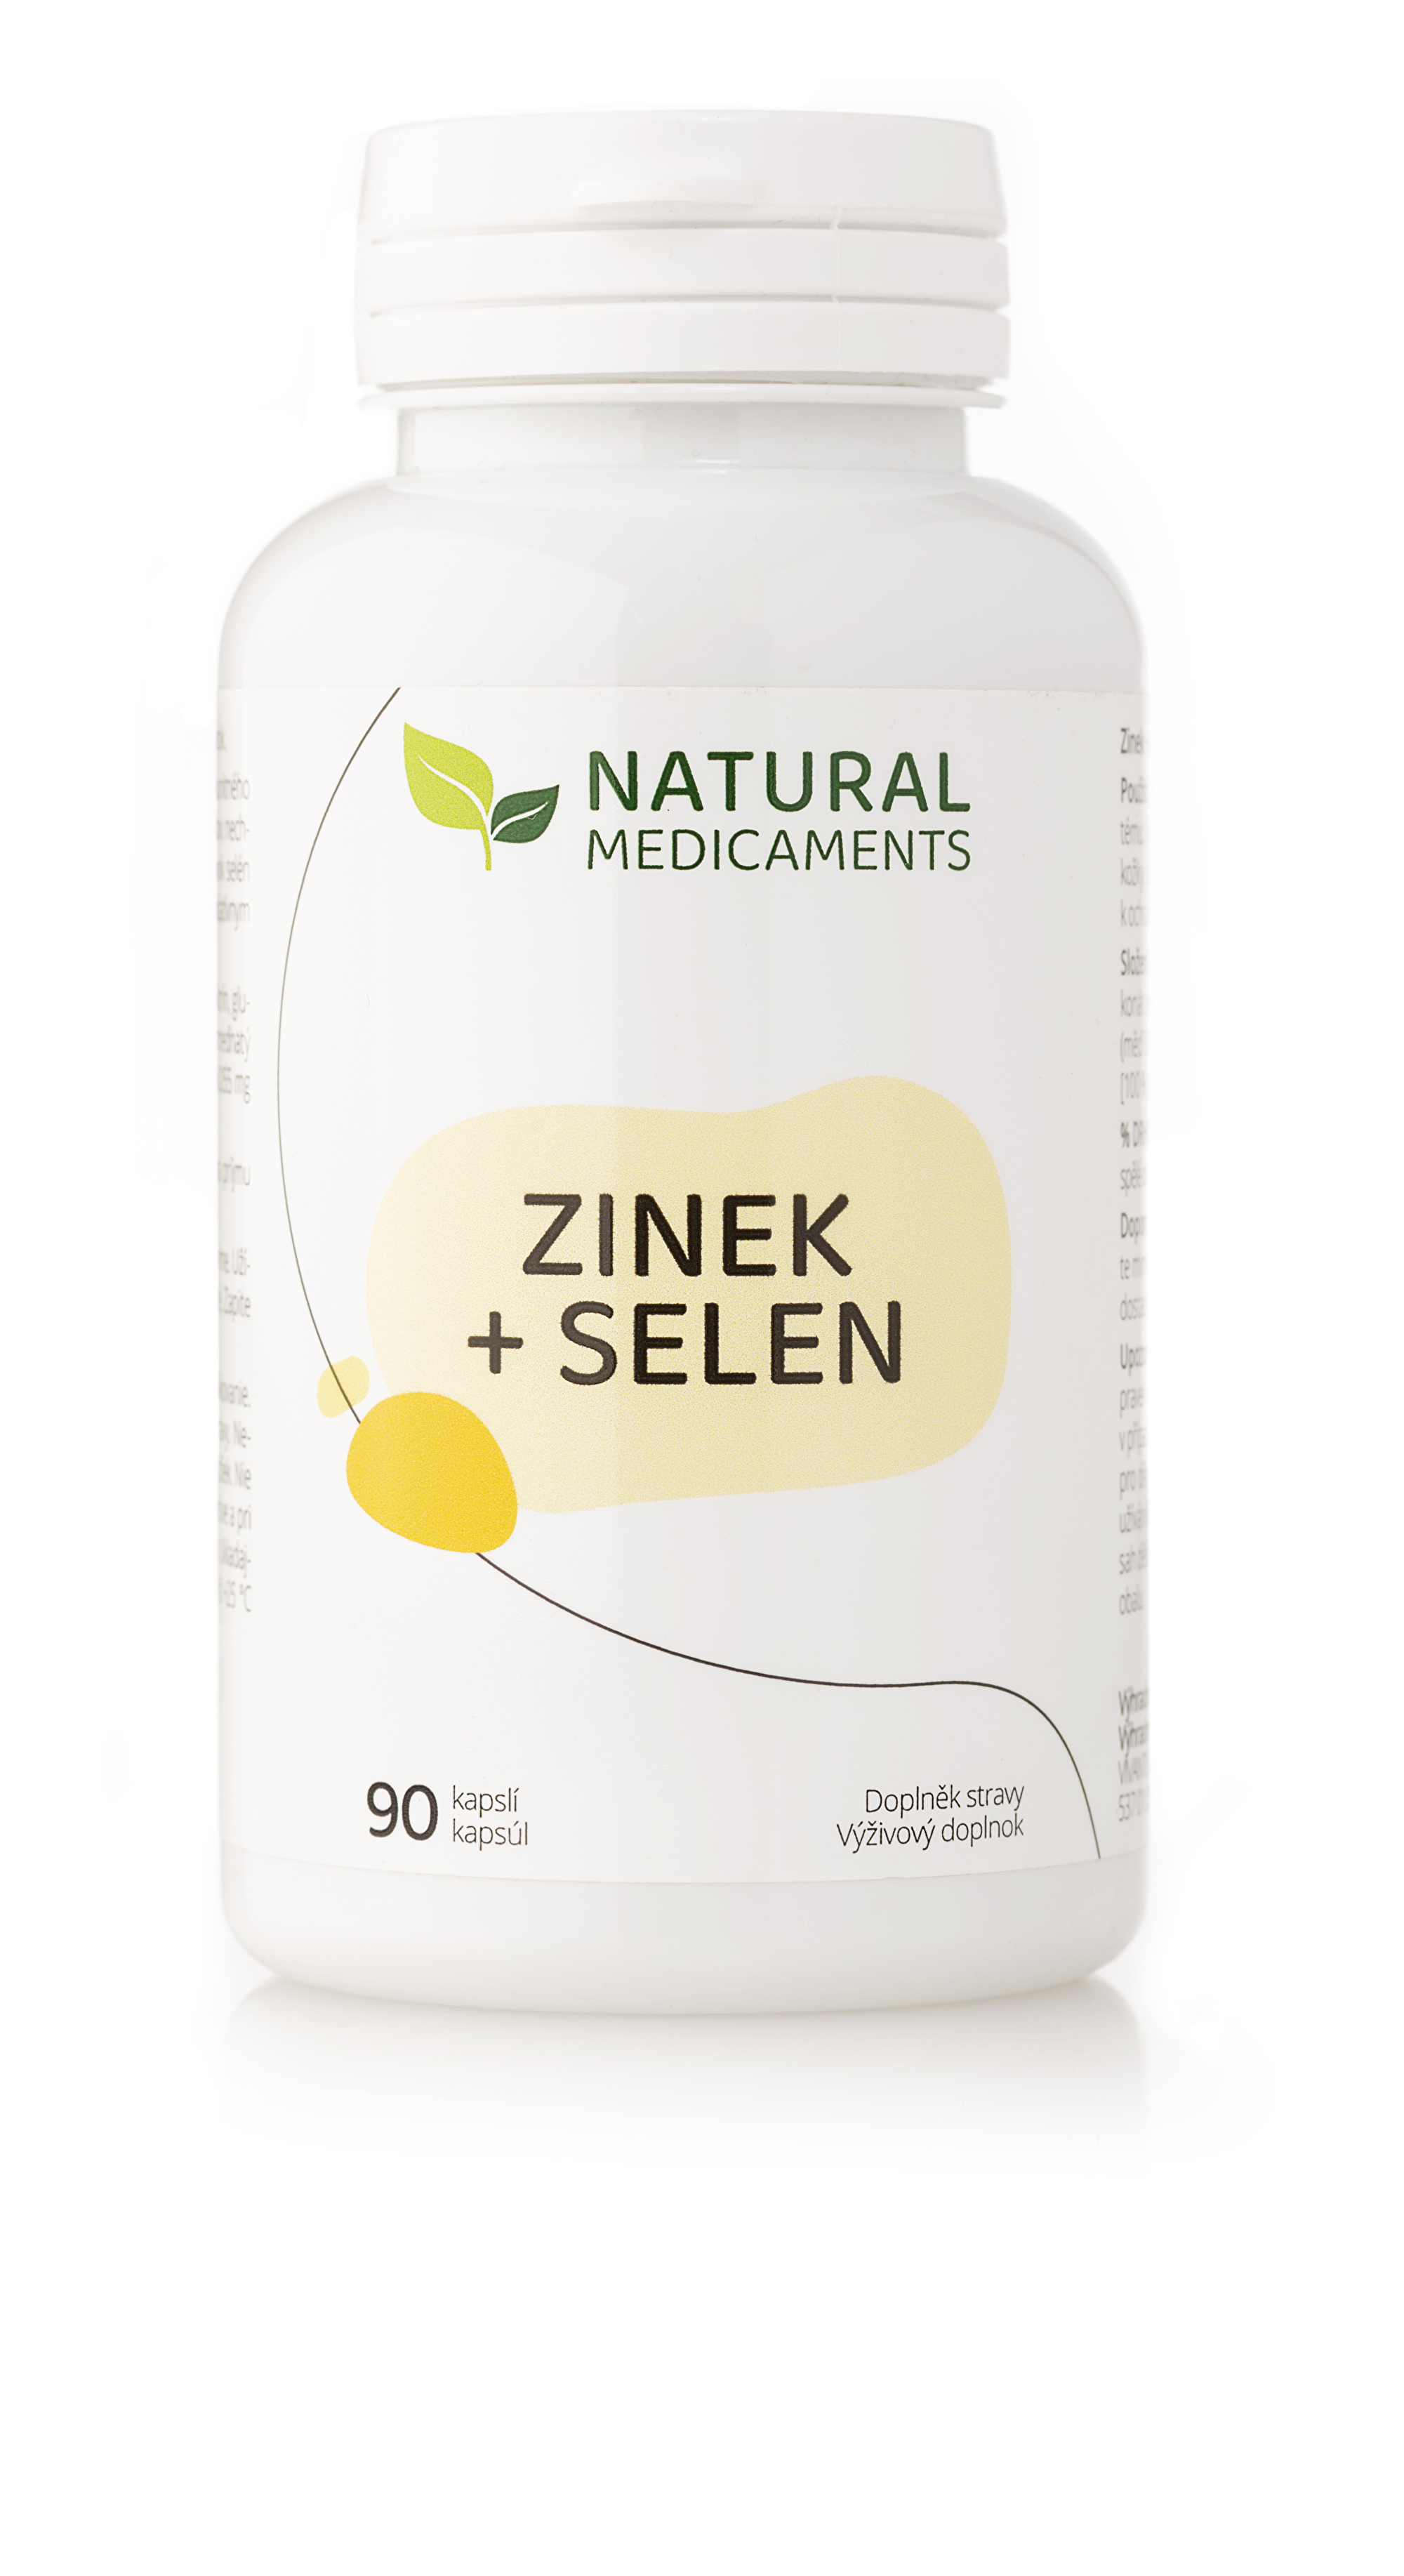 Zobrazit detail výrobku Natural Medicaments Zinek + selen 90 kapslí